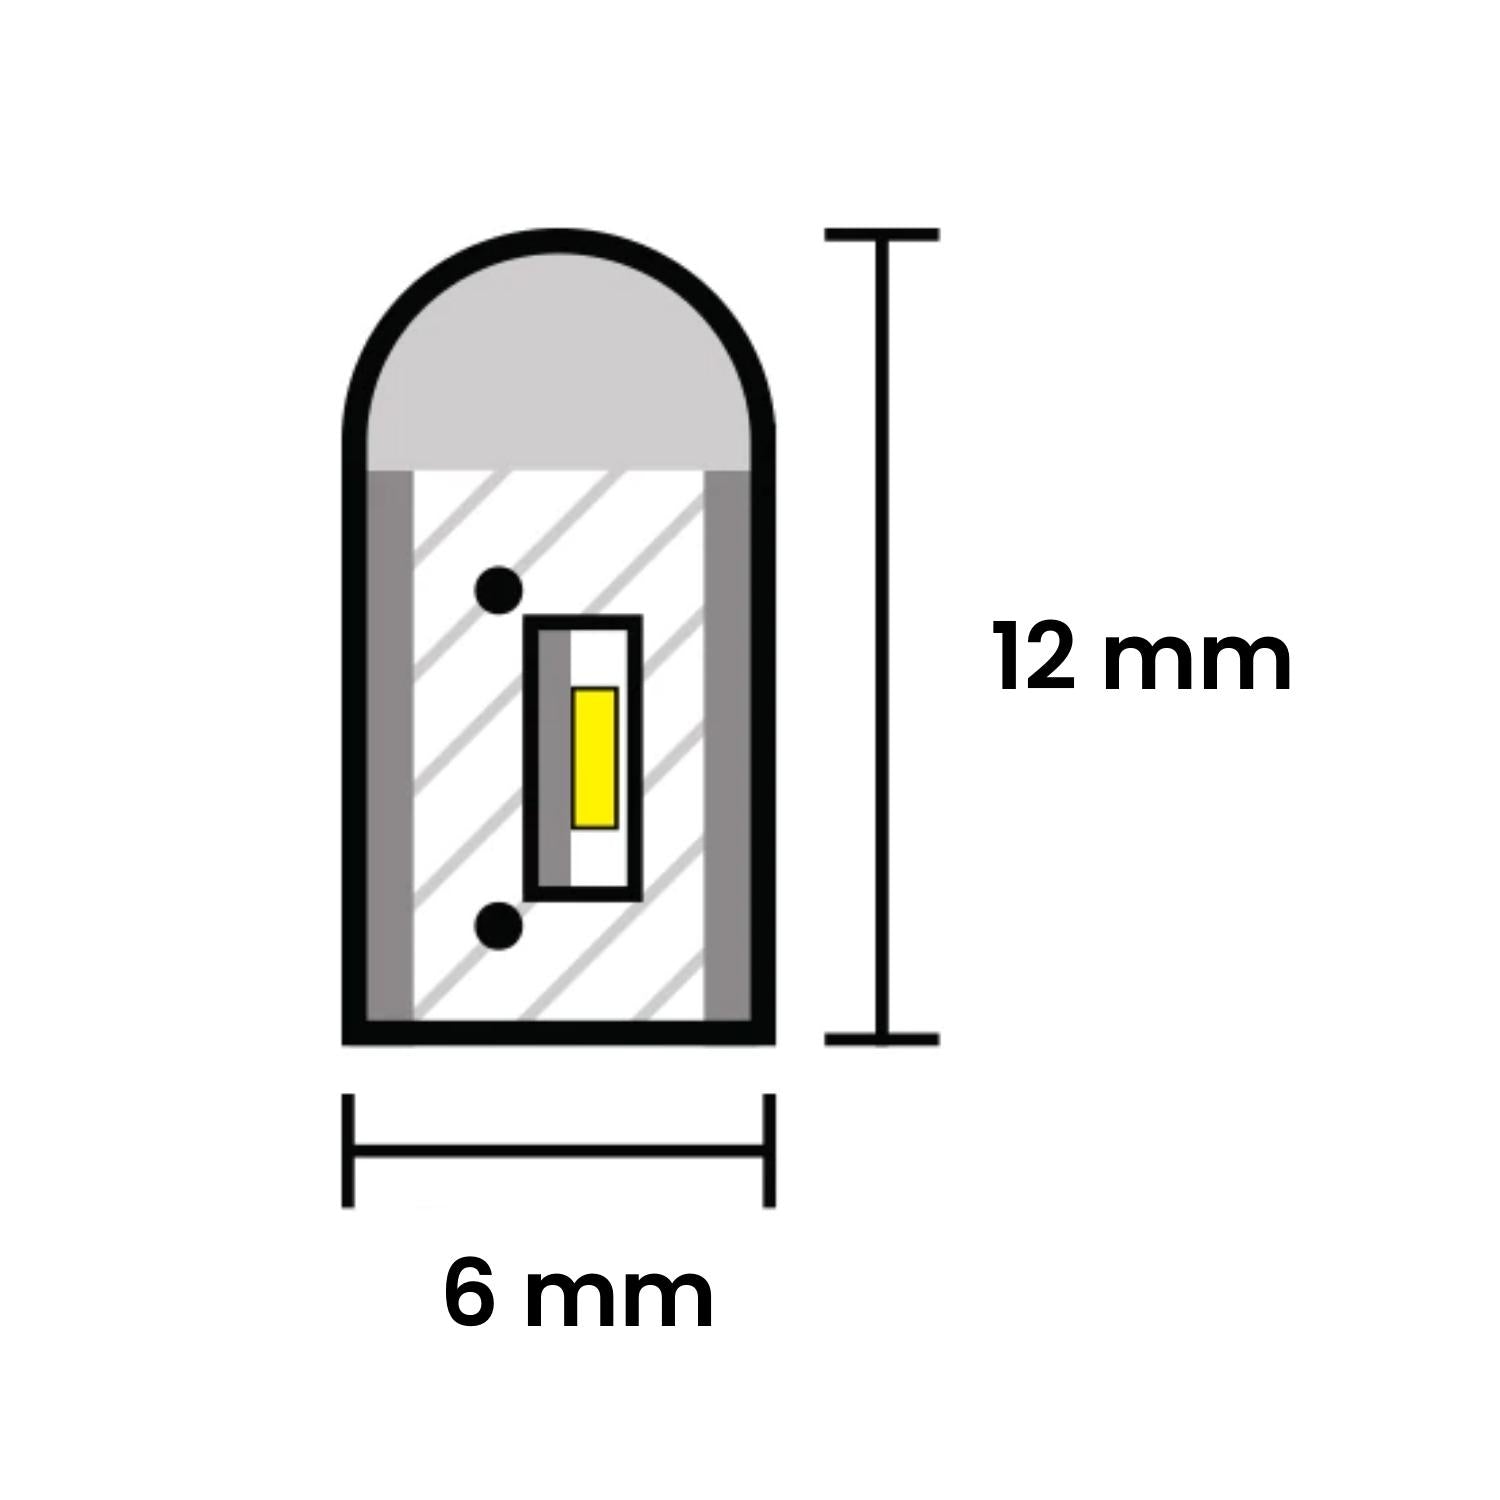 Mini Golden LED Neon Flex 12V 6x12mm 120LED/m IP65 Waterproof 1cm Cut - ATOM LED